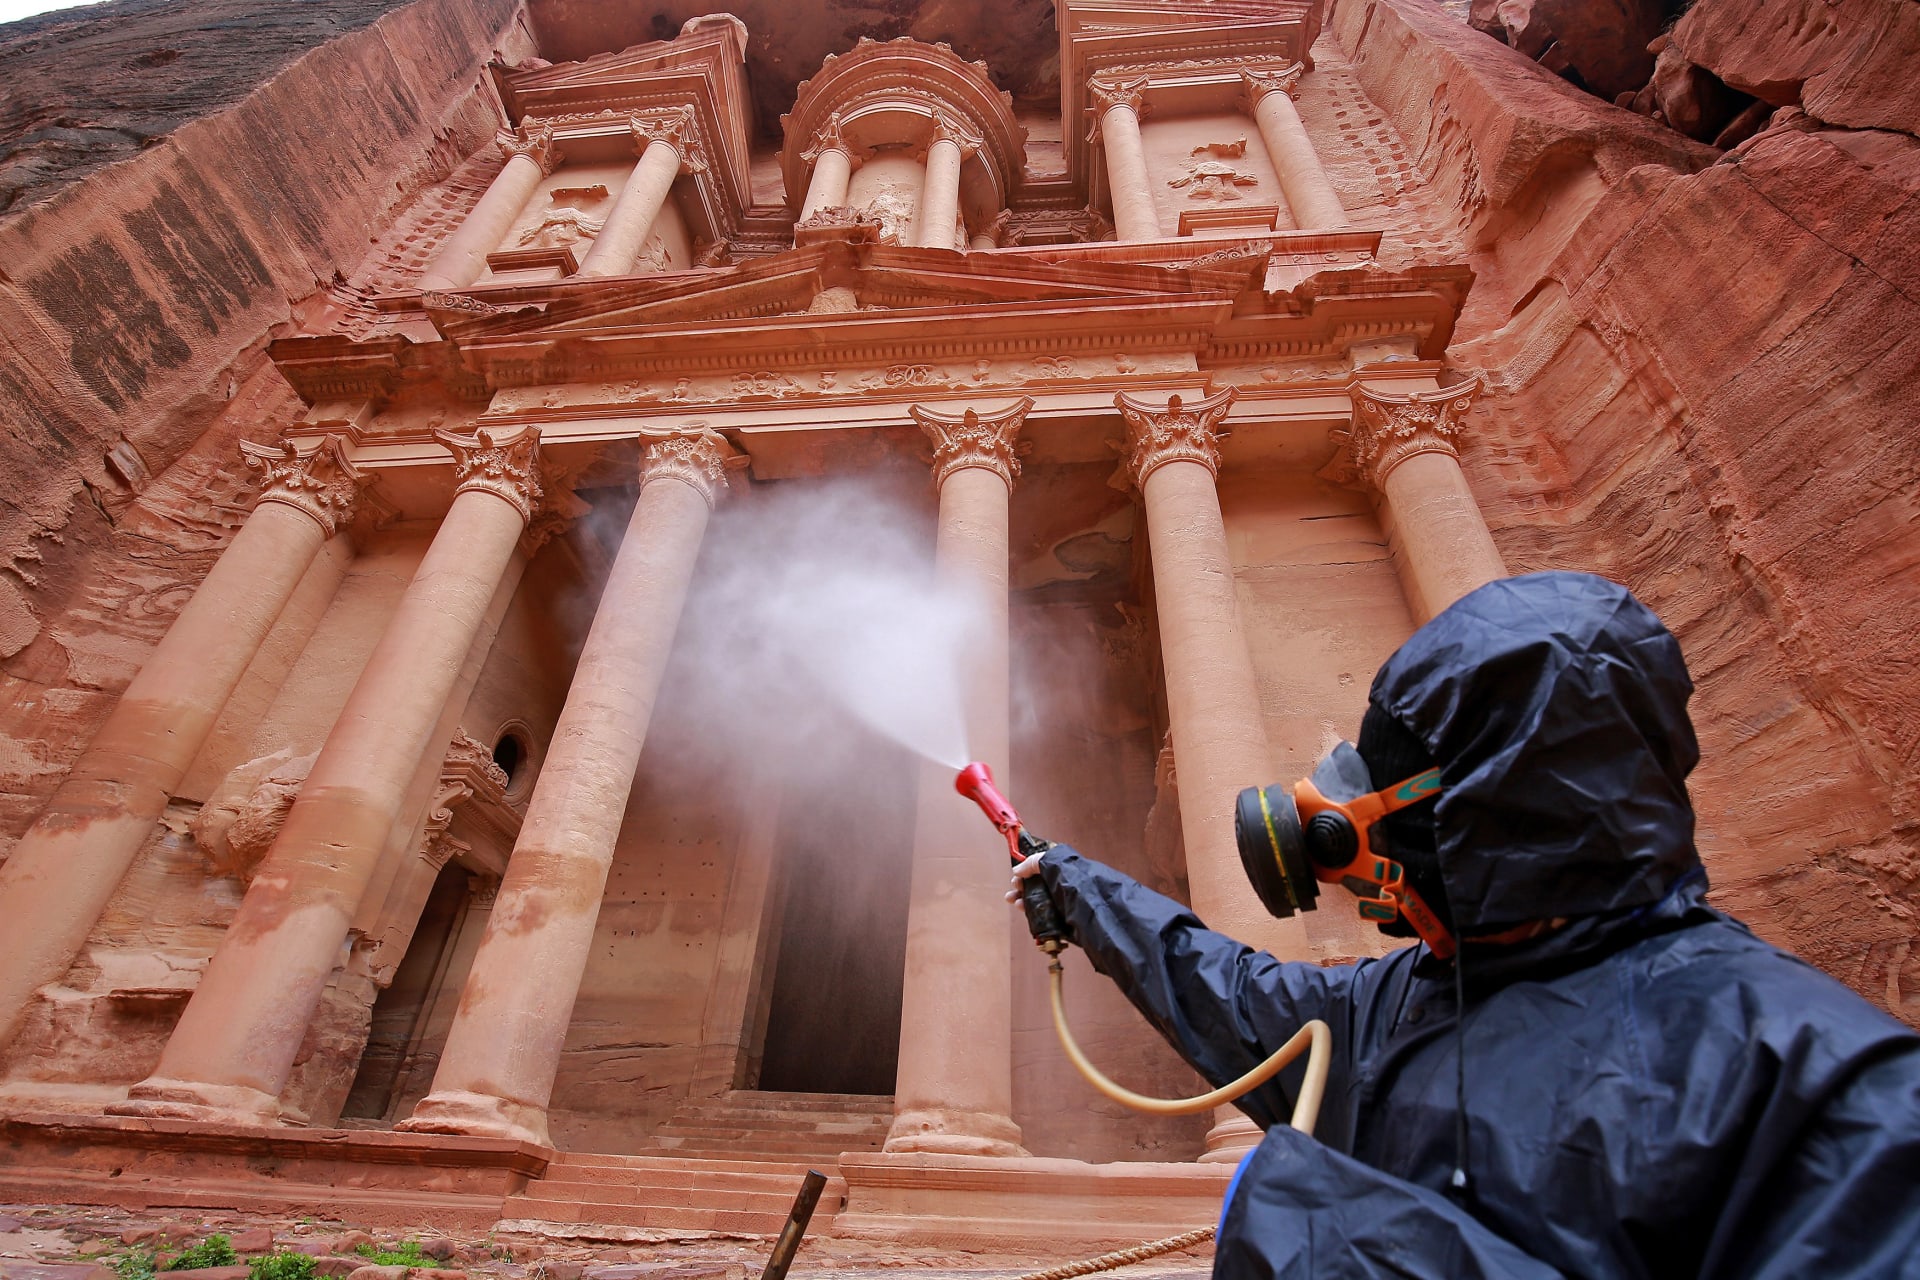 عامل يقوم بتعقيم موقع البتراء الأثري في الأردن بعد انتشار فيروس كورونا